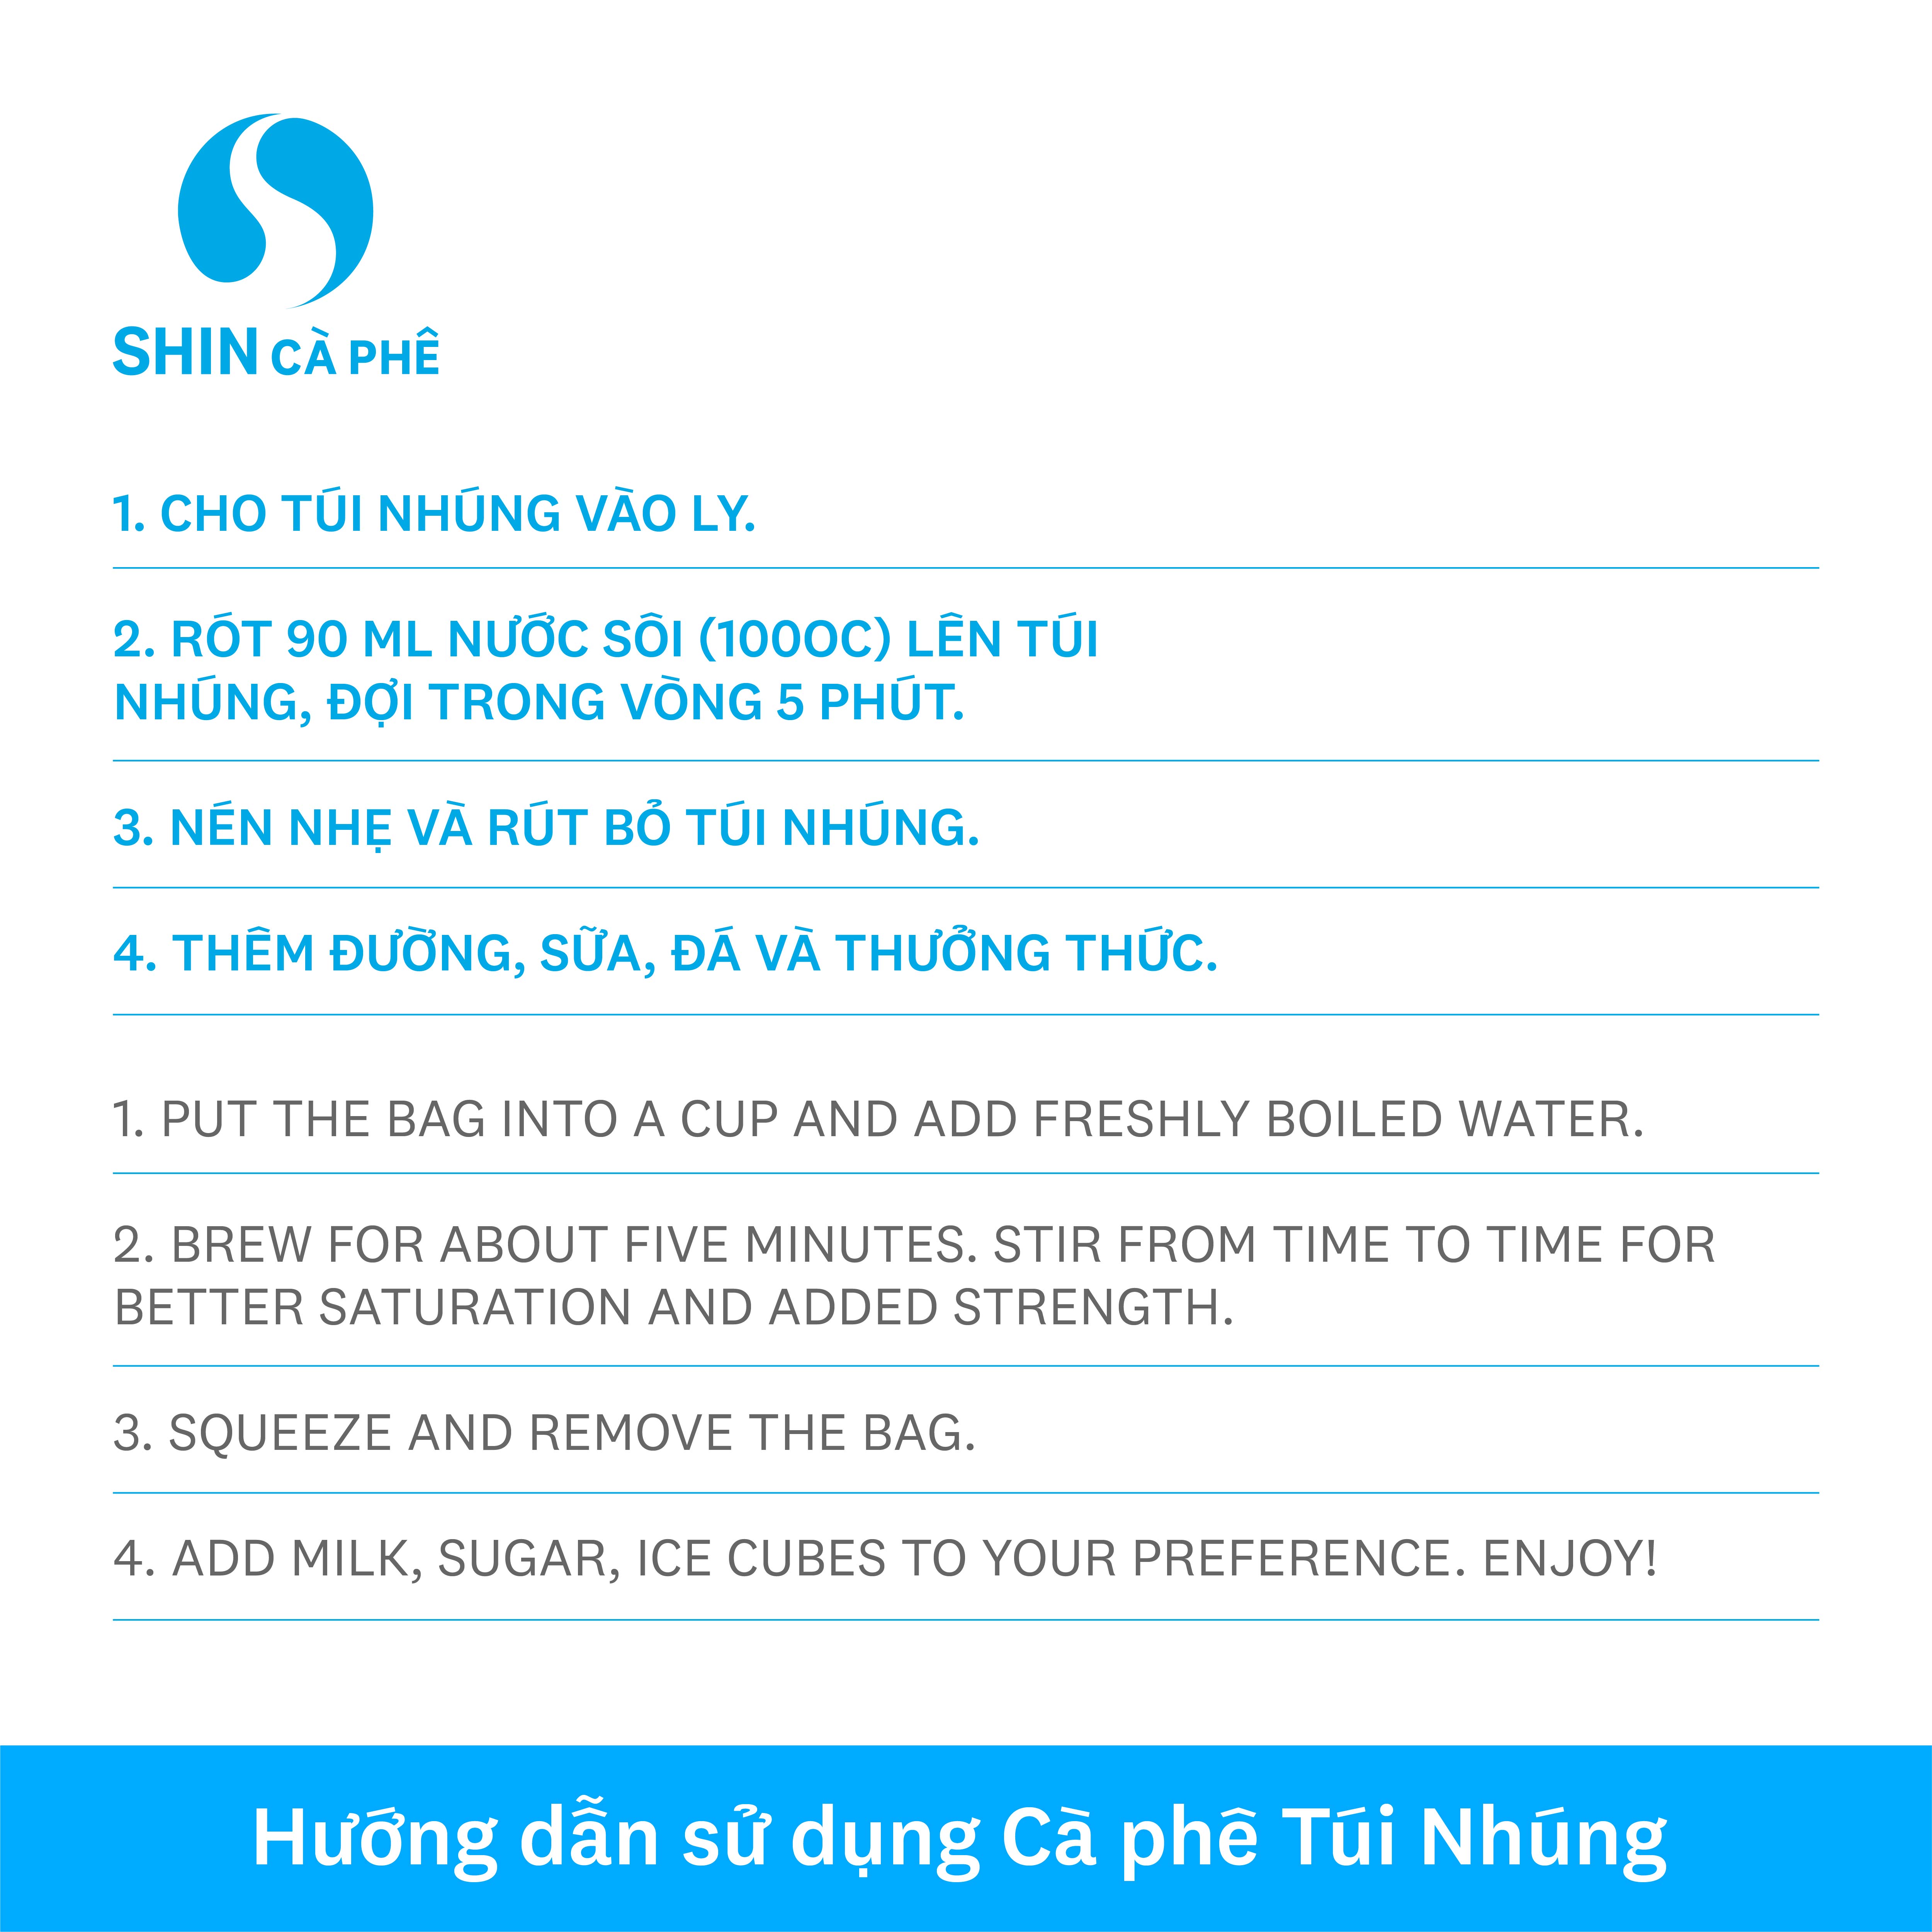 SHIN Cà Phê - Cà phê túi nhúng đặc sản Khe Sanh Blend hộp 10 gói